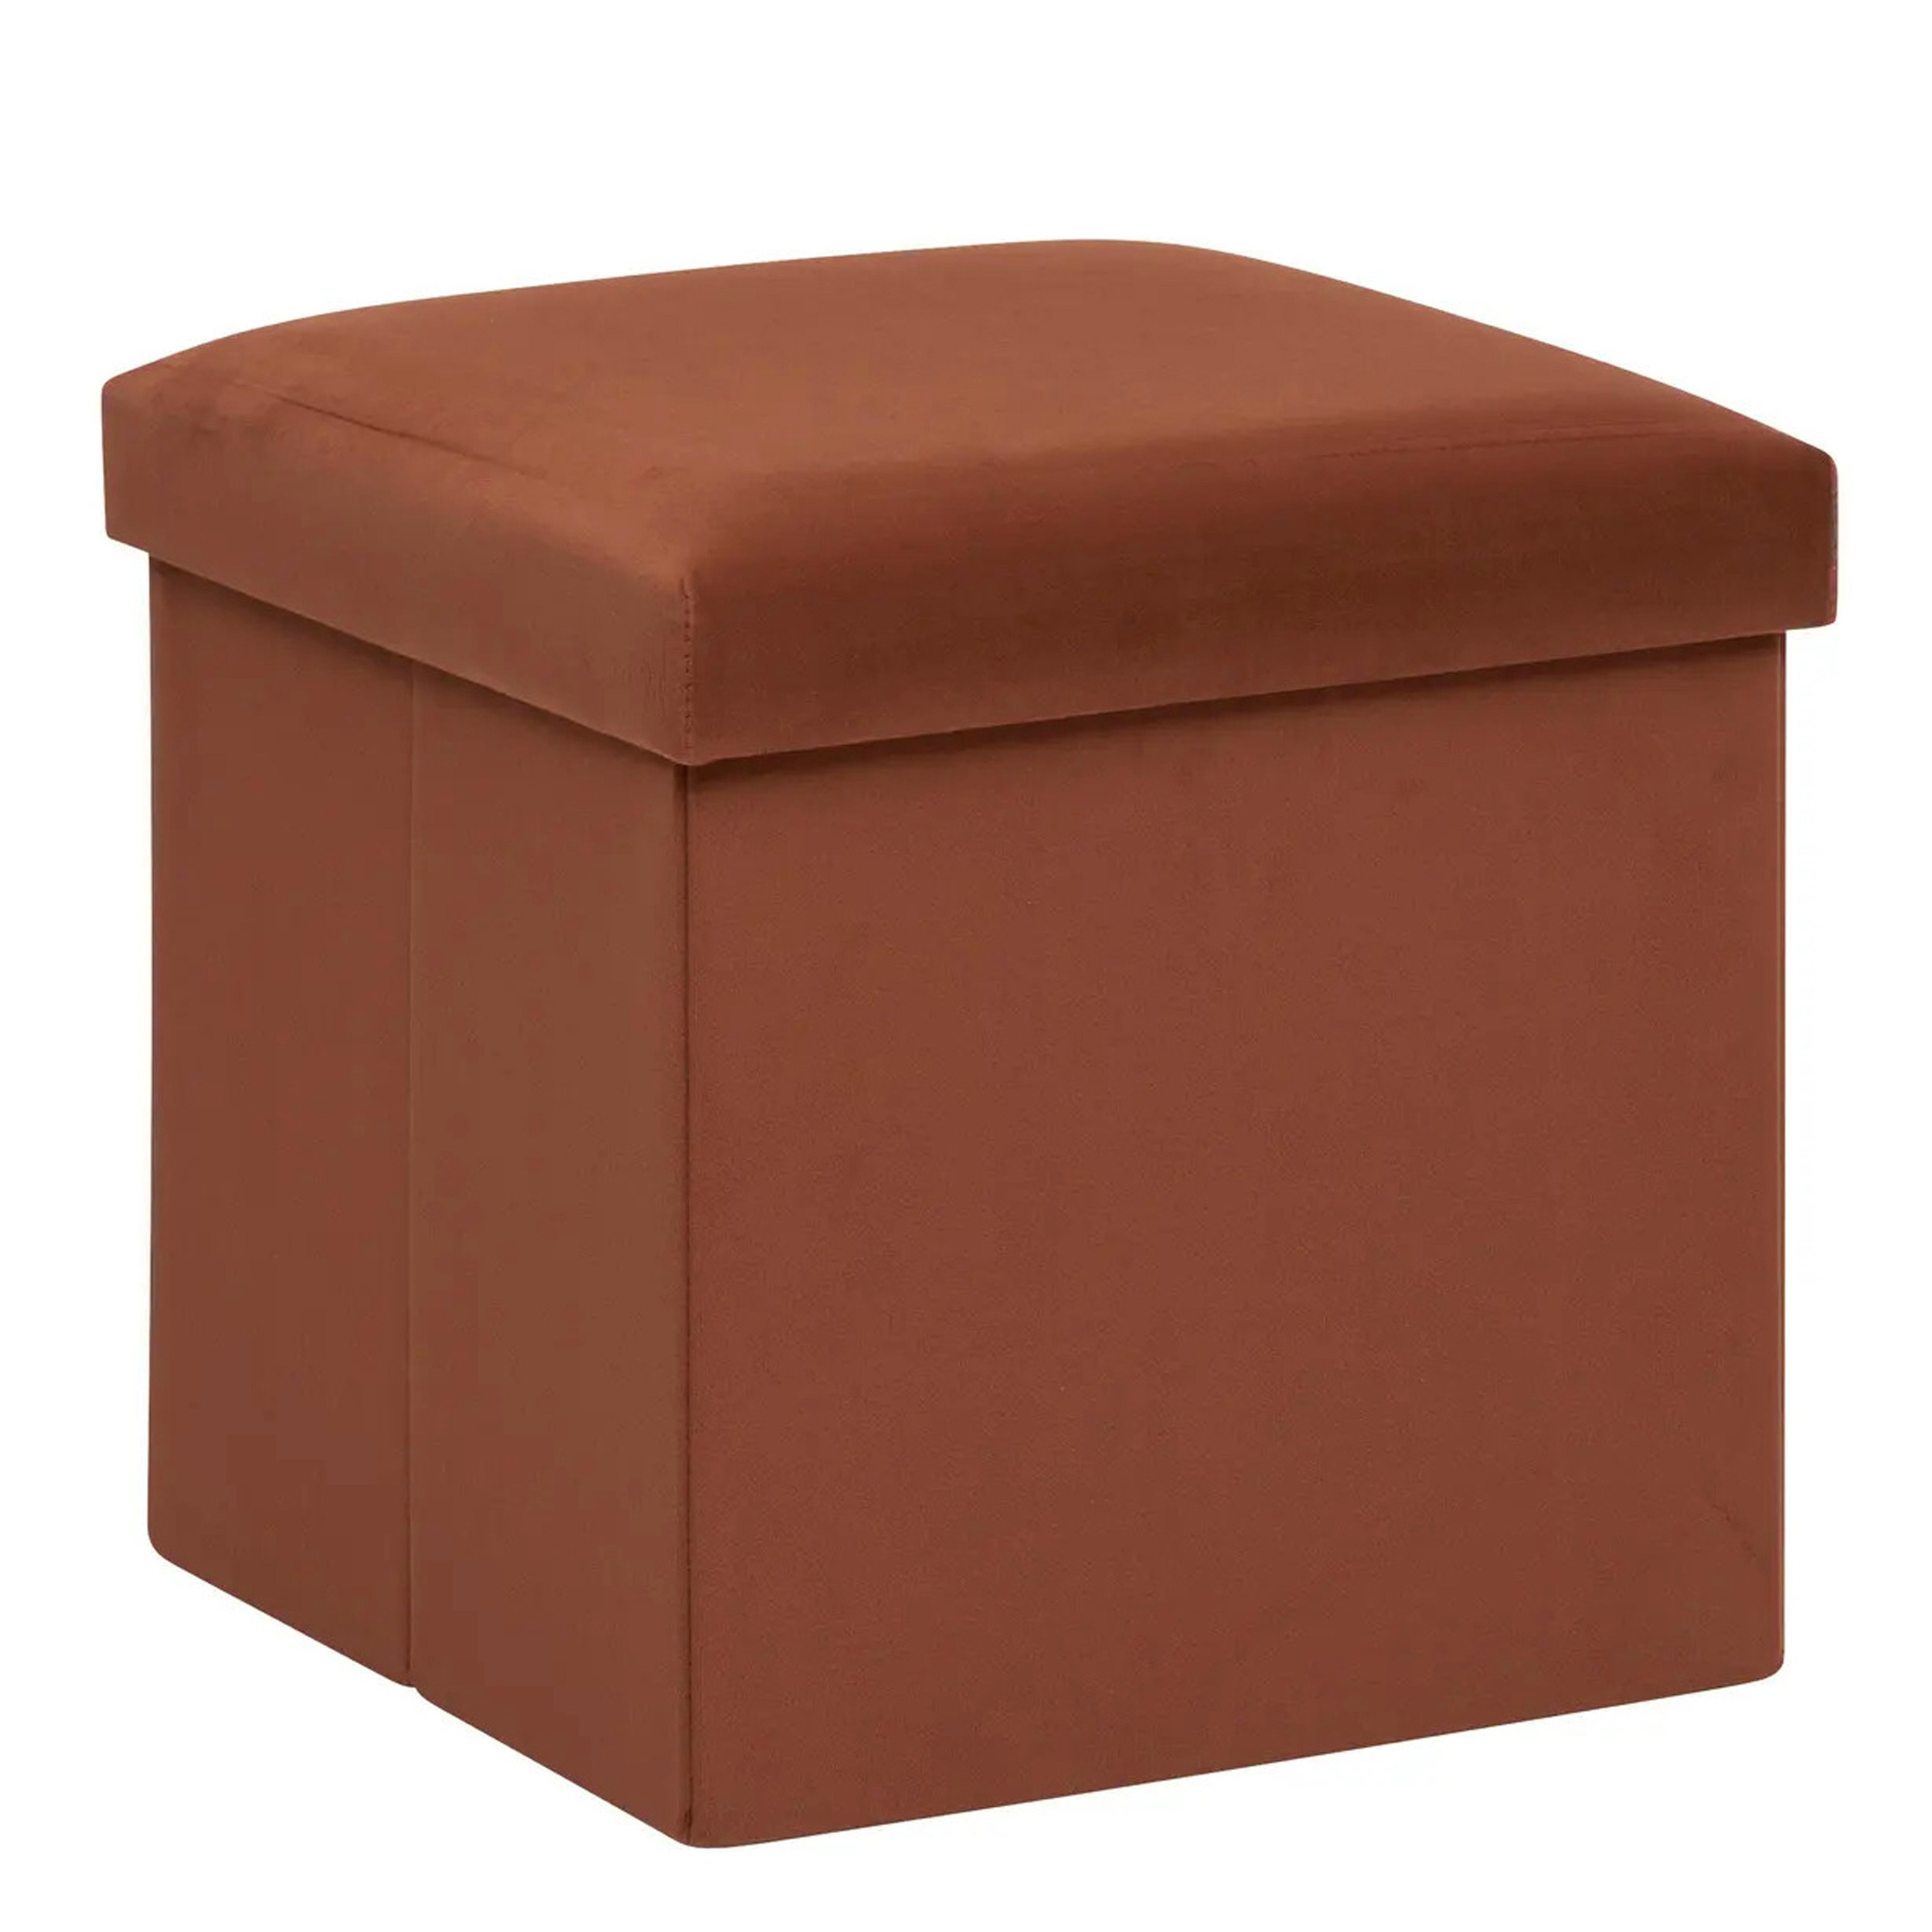 Poef-krukje-hocker Amber Opvouwbare zit opslag box fluweel roest bruin D38 x H38 cm